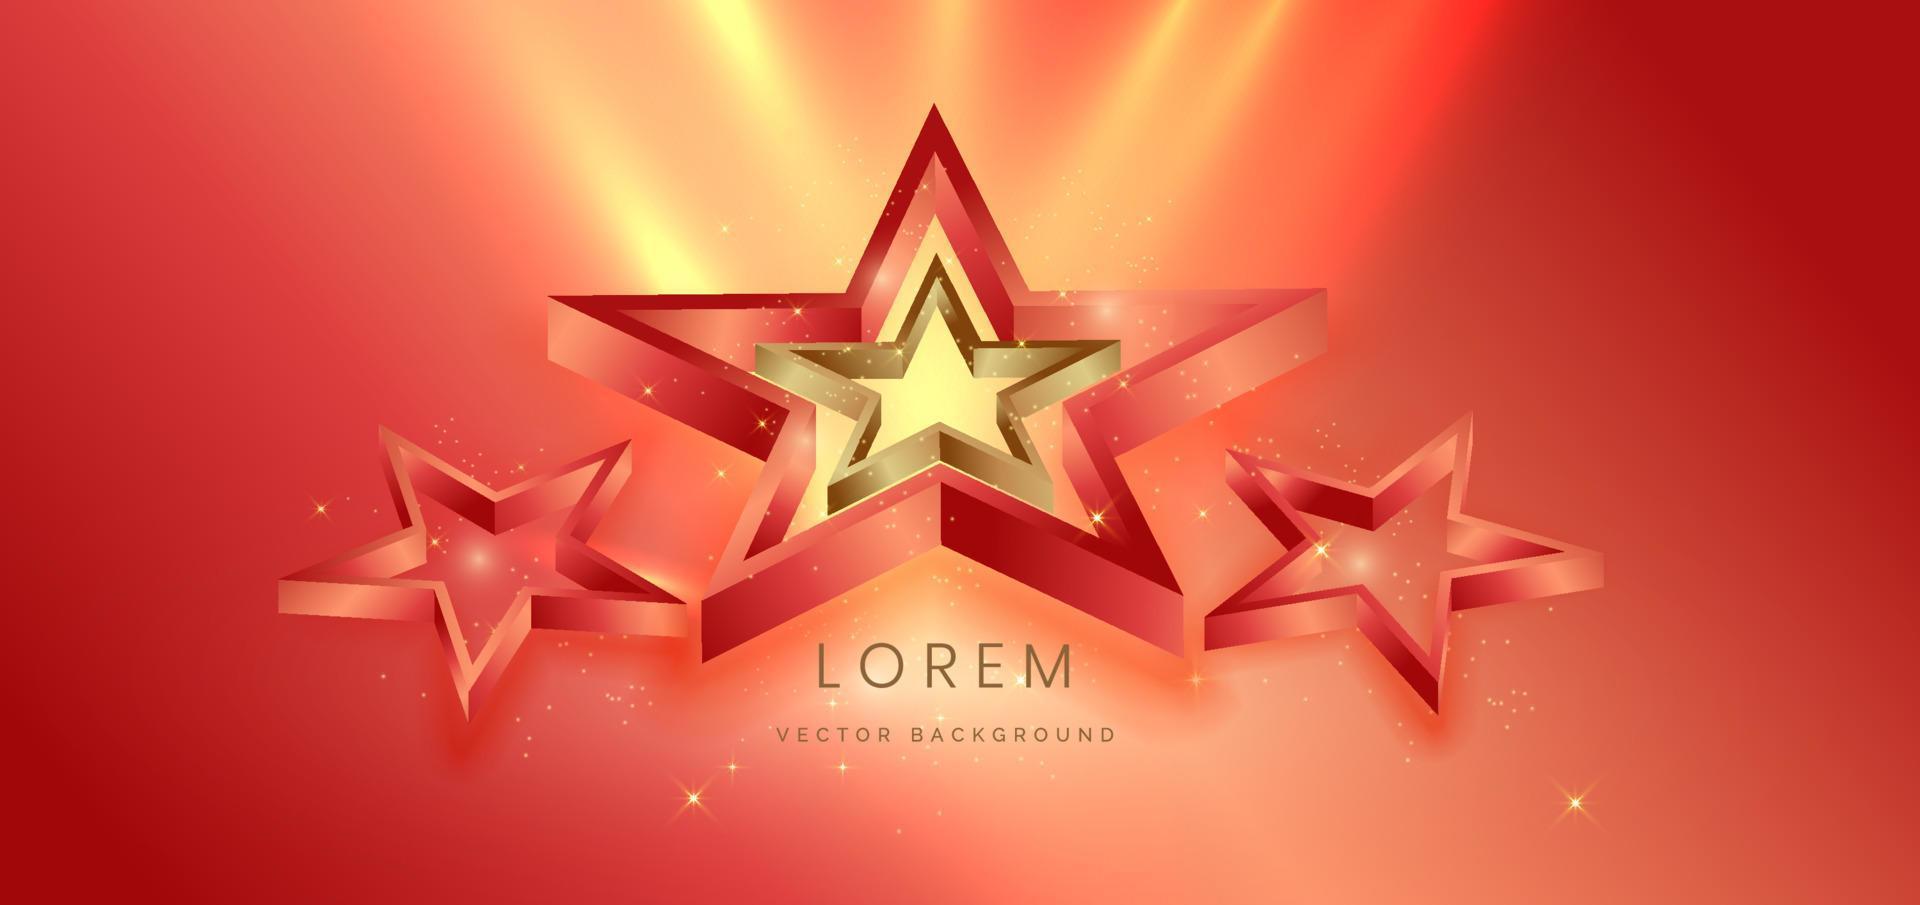 3D estrela dourada com dourado e vermelho sobre fundo vermelho com efeito de iluminação e brilho. modelo de design de prêmio premium de luxo. vetor